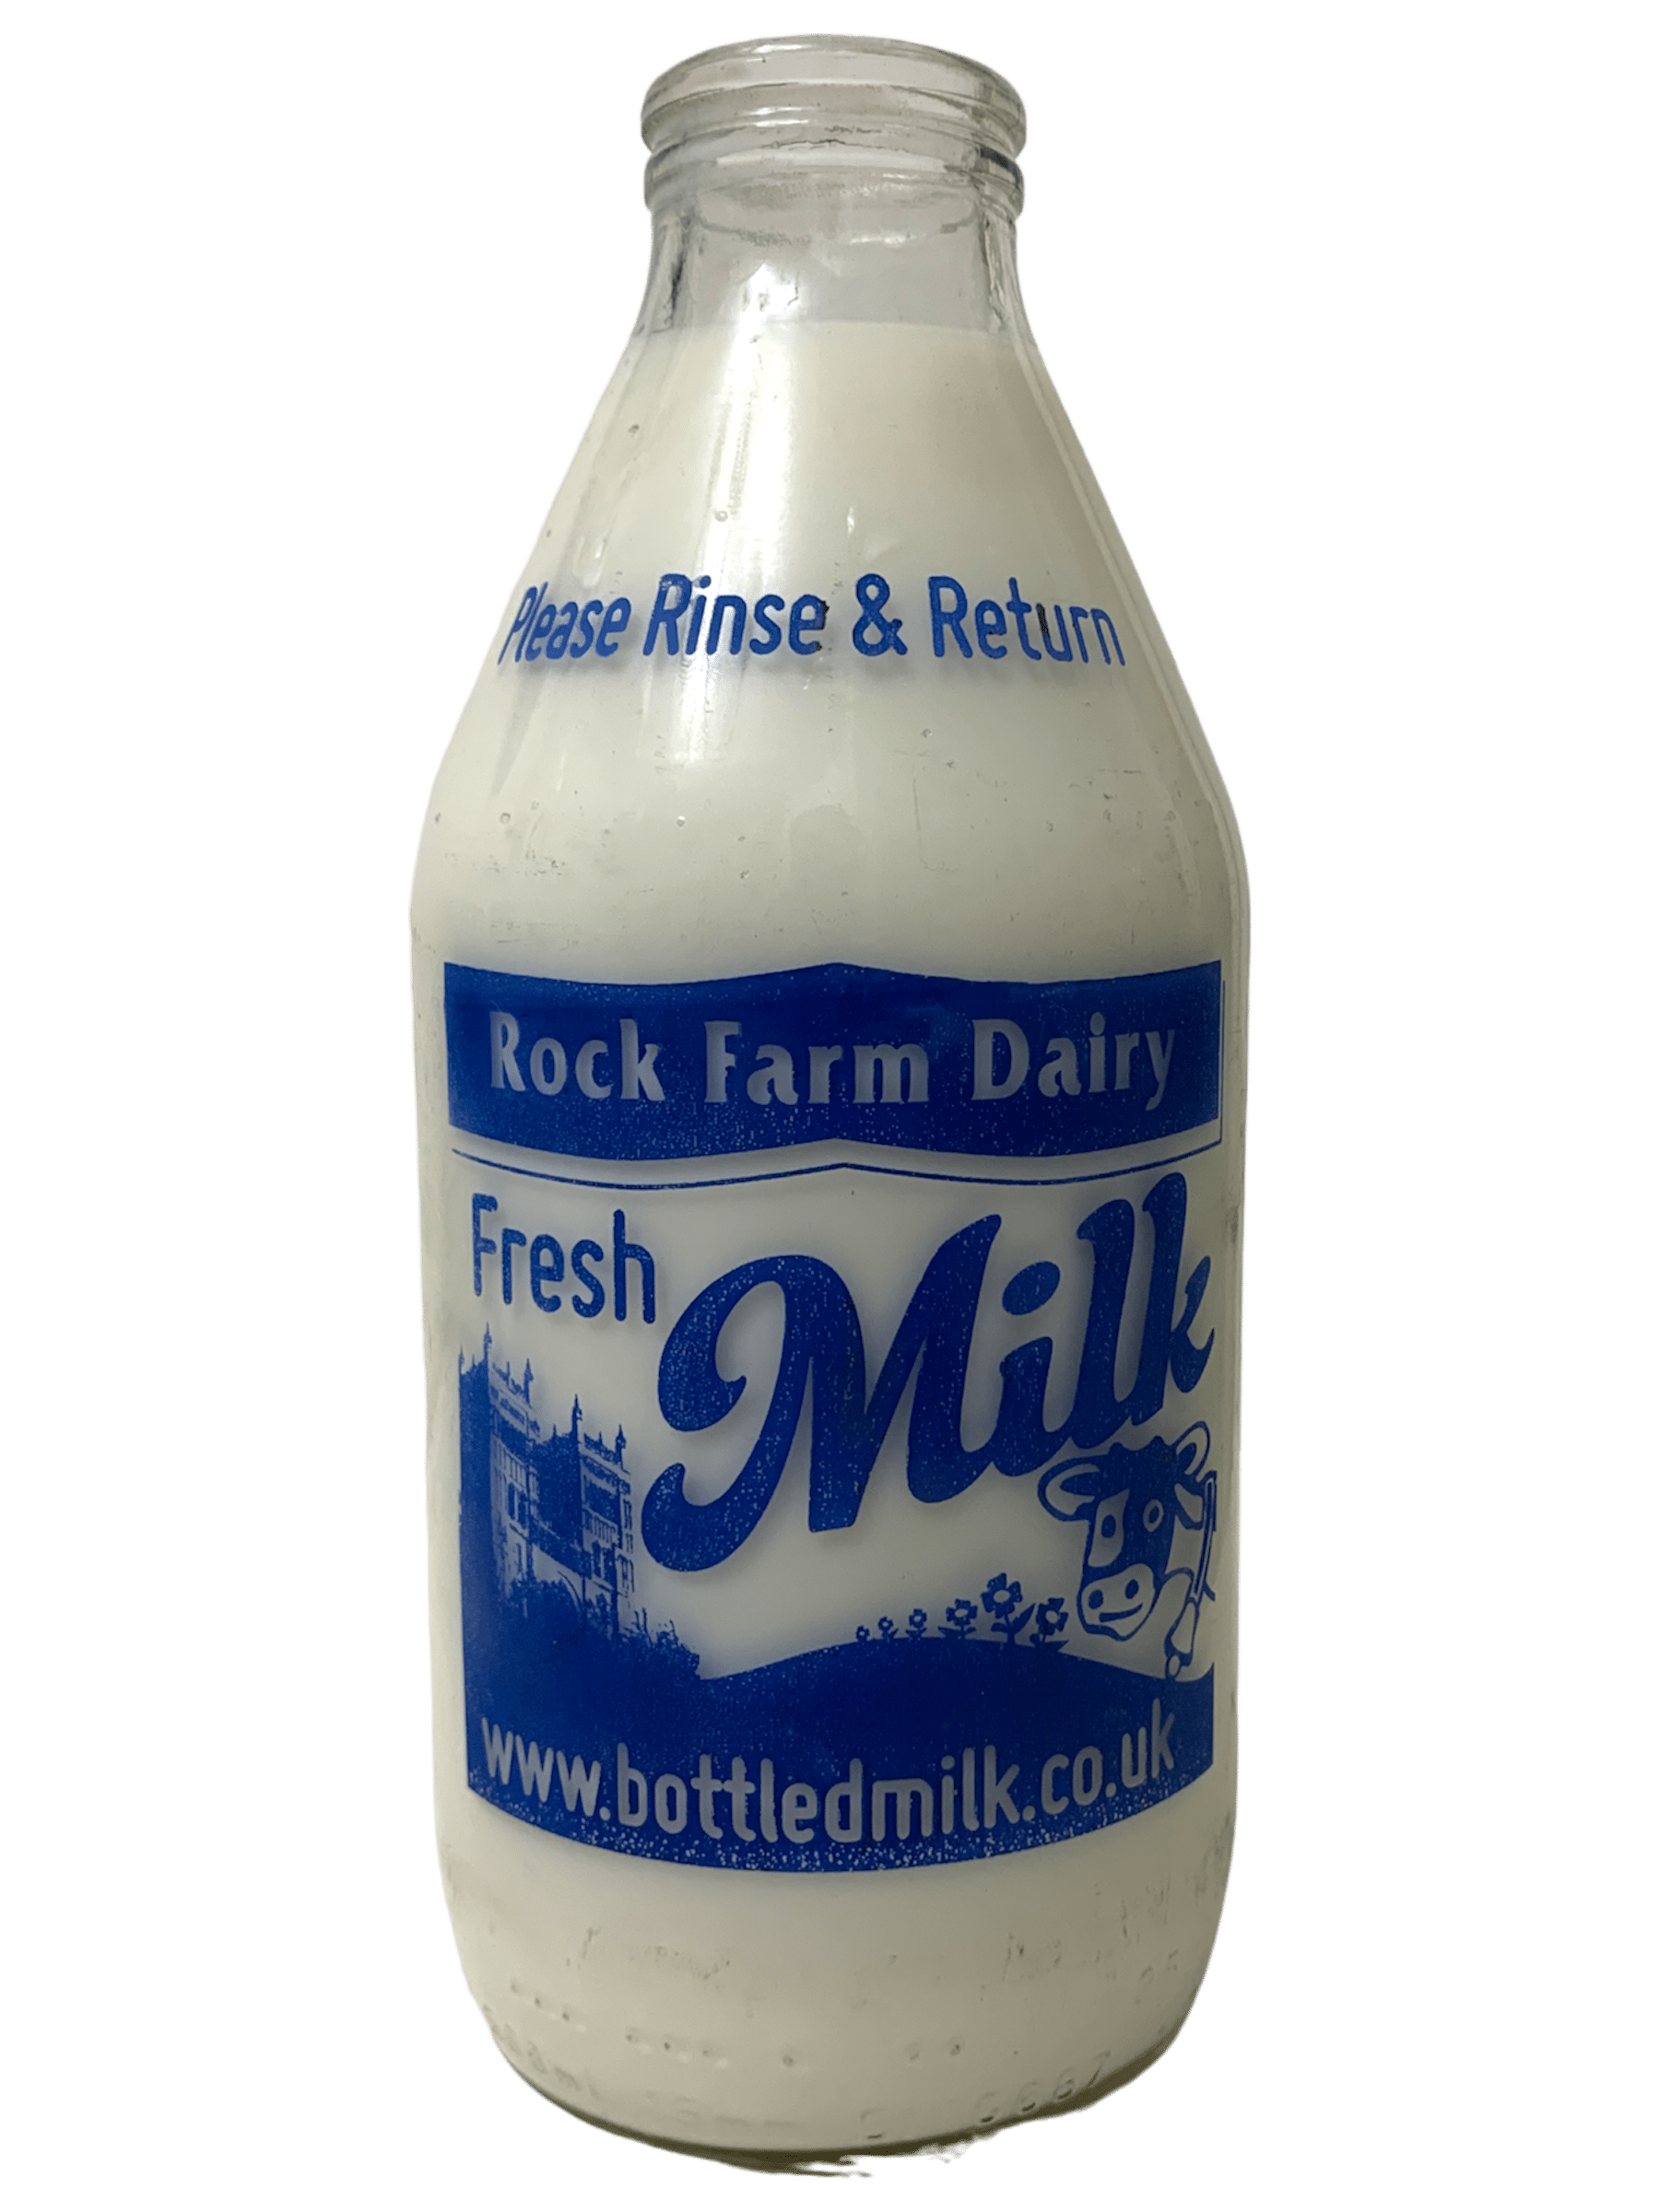 Rock Farm Dairy - www.Kelis.info #KelisTheBottleBank